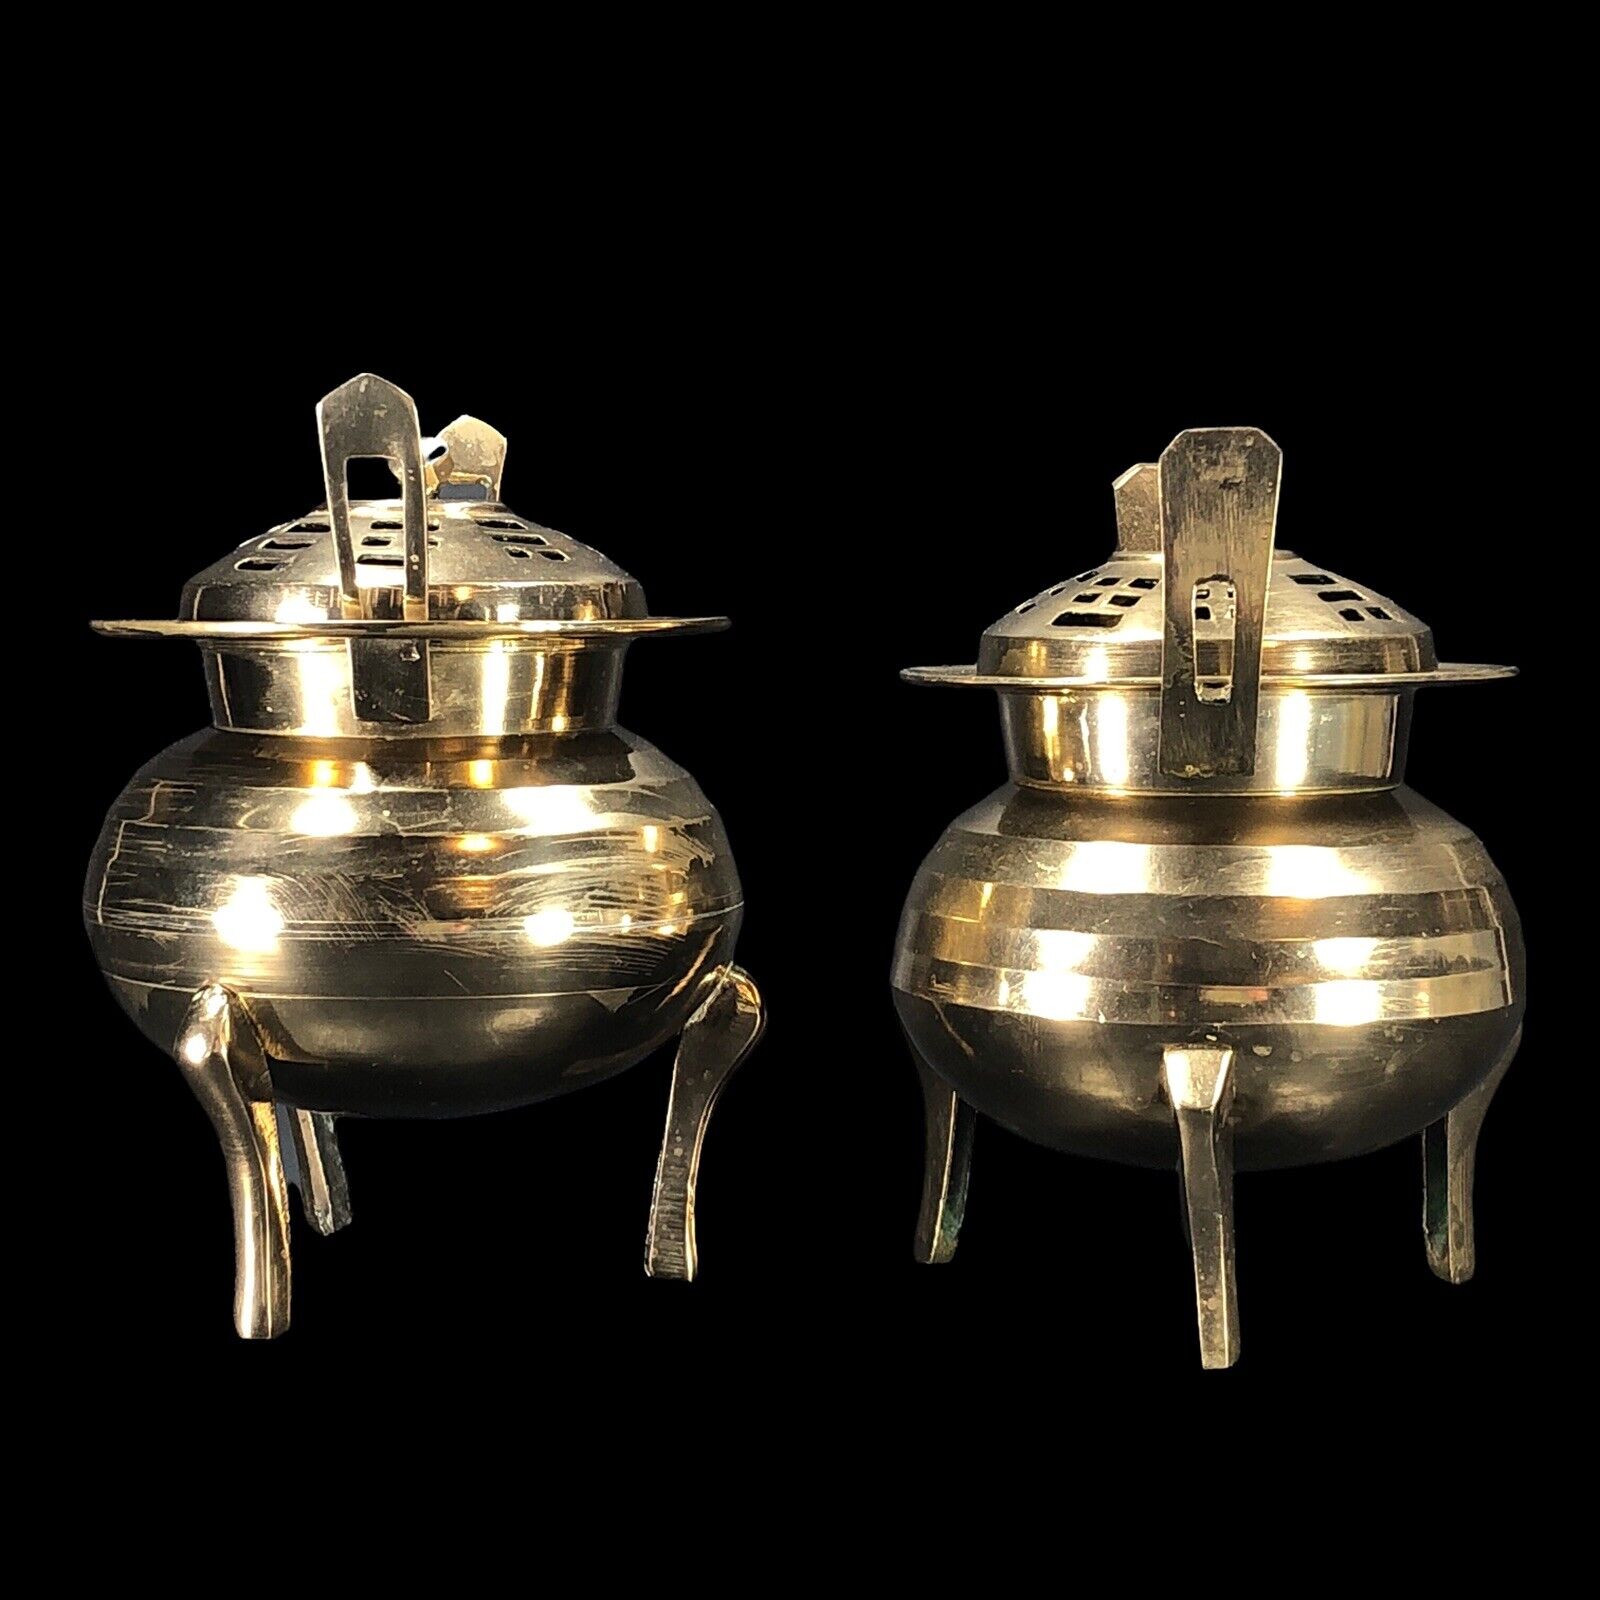 2ct Vintage Brass Chinese Censer Incense Burner Round w/ Lid Footed 5-in High Без бренда - фотография #5